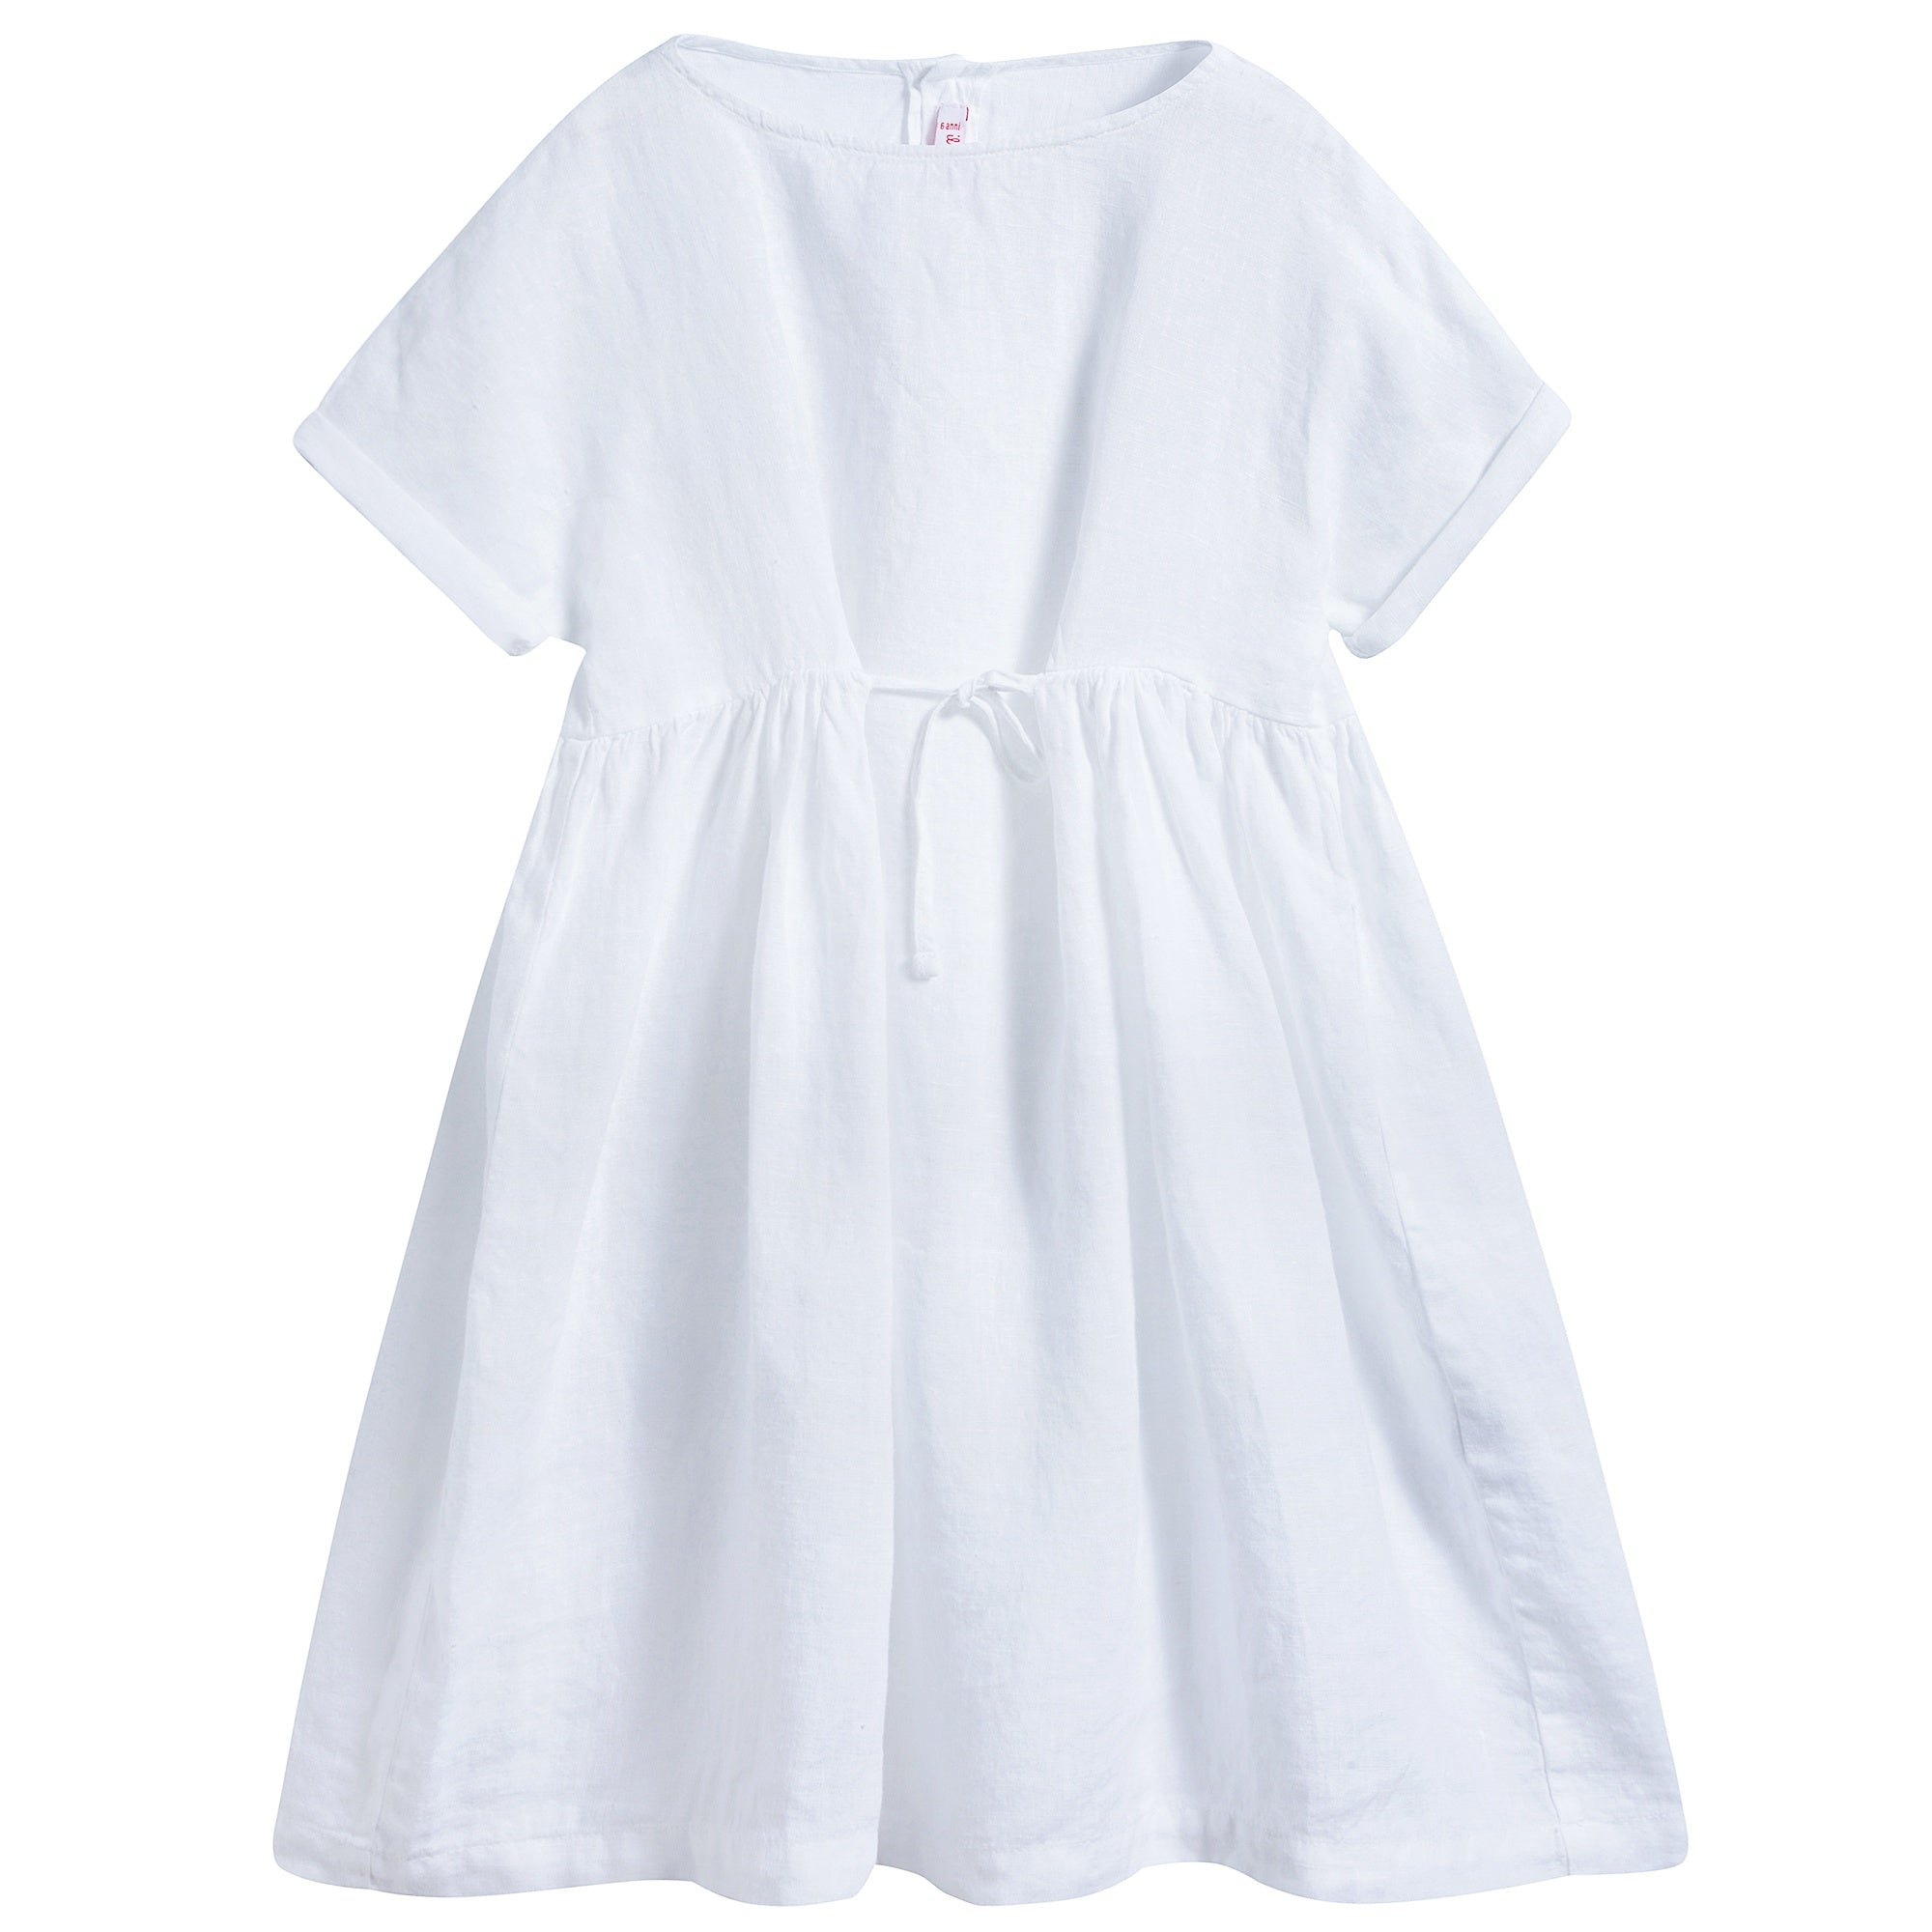 Girls White Linen Dress